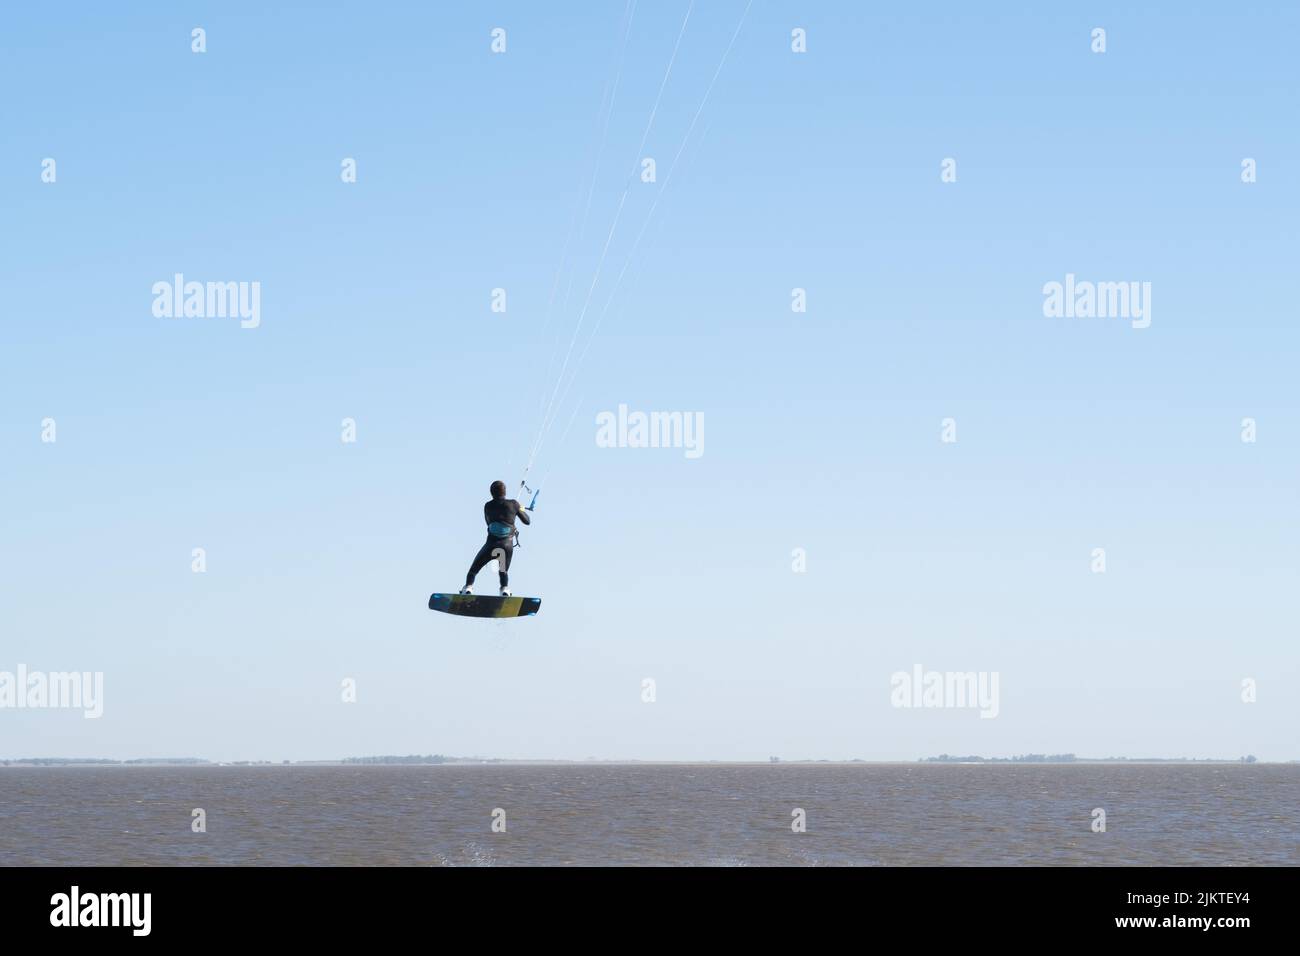 Eine Person, die einen Kitesurfing-Trick ausführt Stockfoto